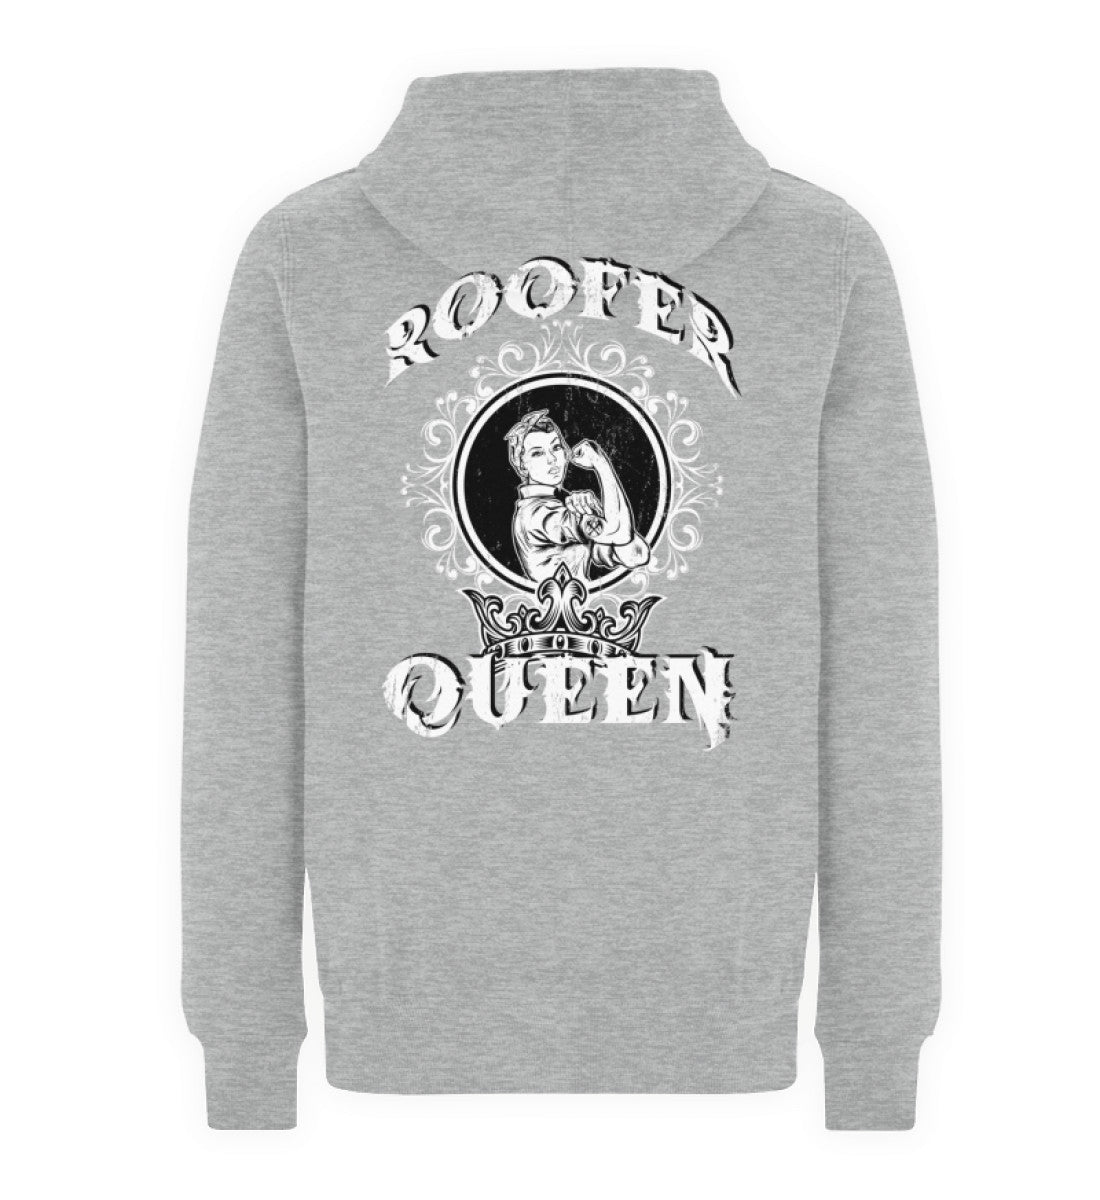 Roofer Queen Version 1.0  - Unisex Premium Kapuzenpullover €49.95 Rooferking